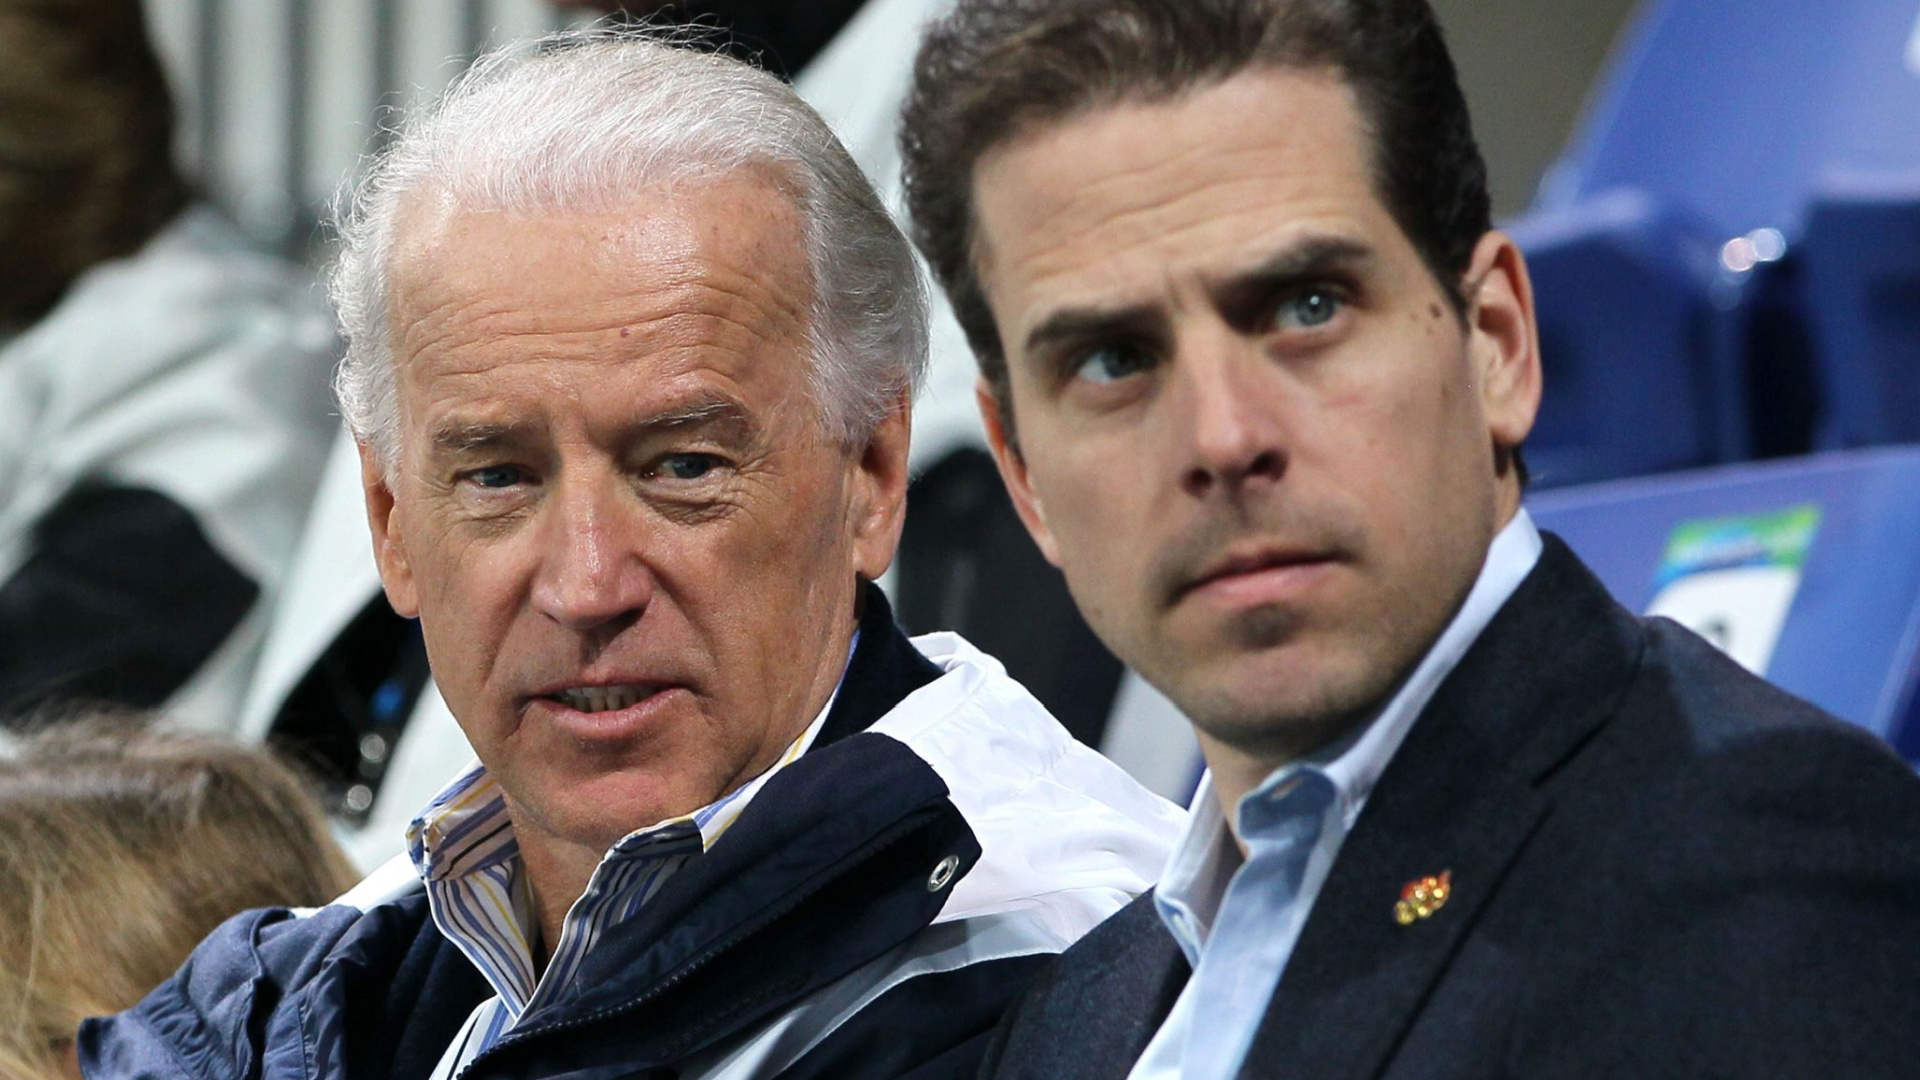 La escandalosa vida privada del hijo de Biden que sacude a todo un país: arranca el juicio